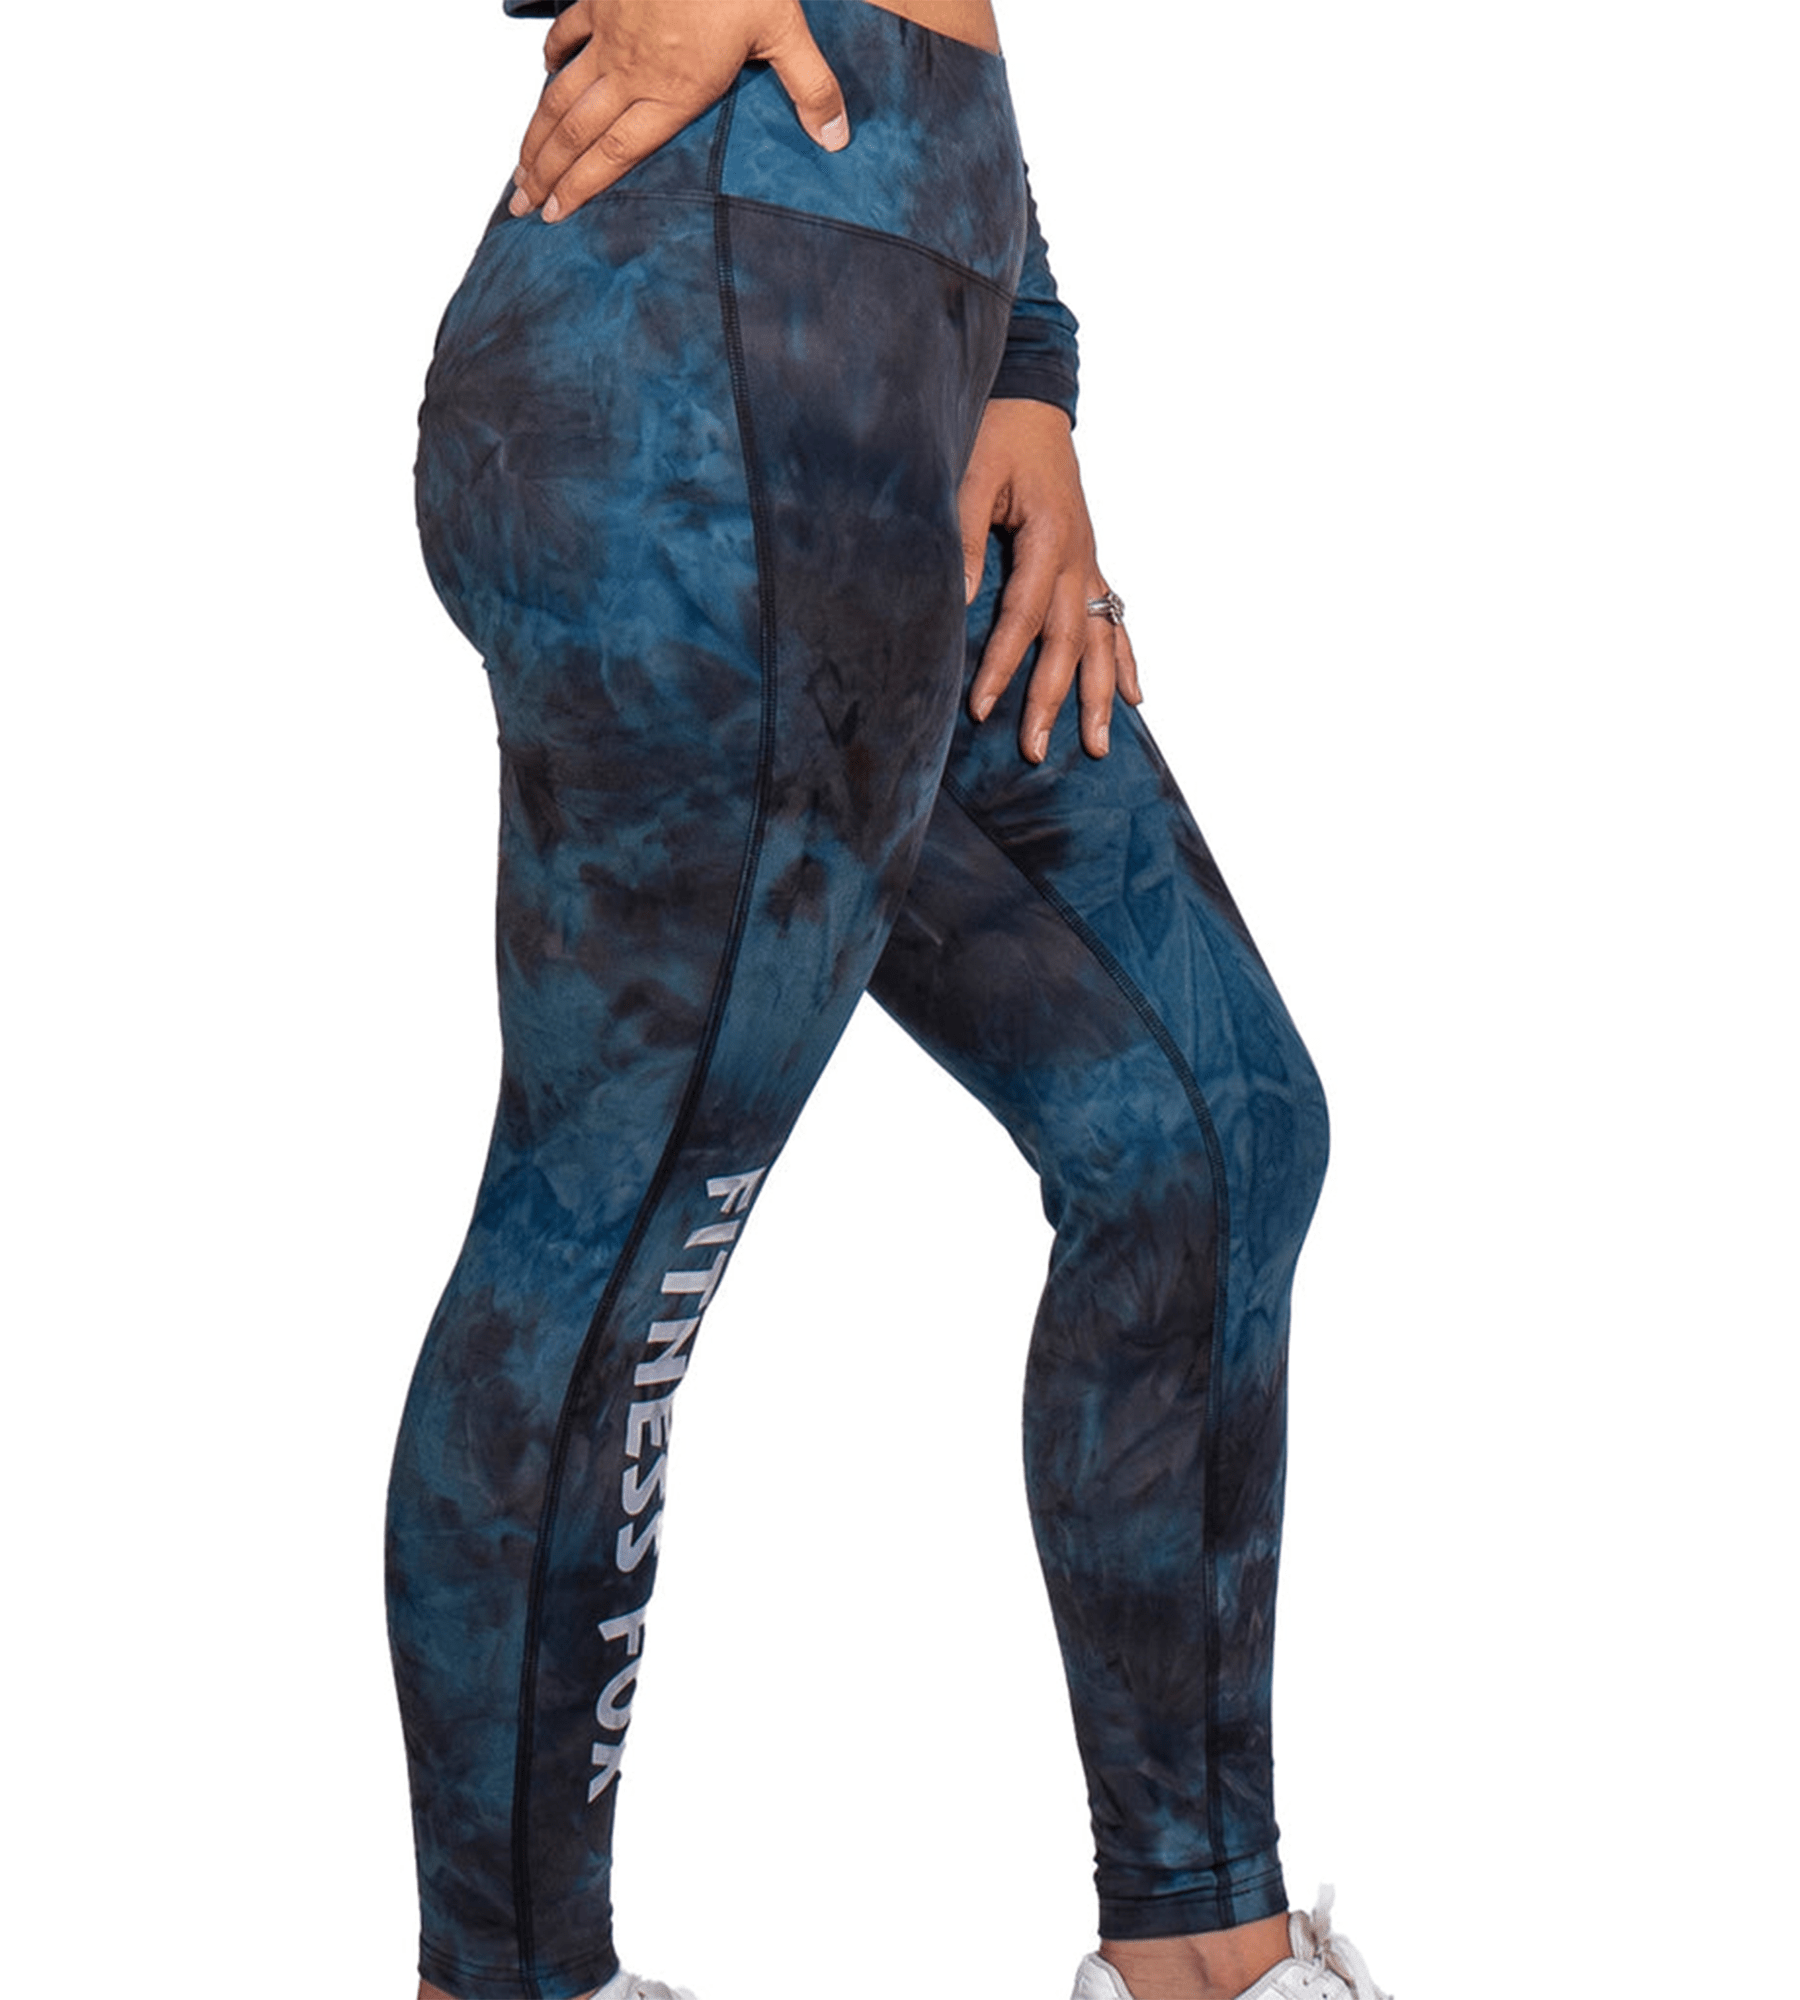 FitnessFox Blue Tie Dye Scrunch Bum Leggings (Limited Edition)